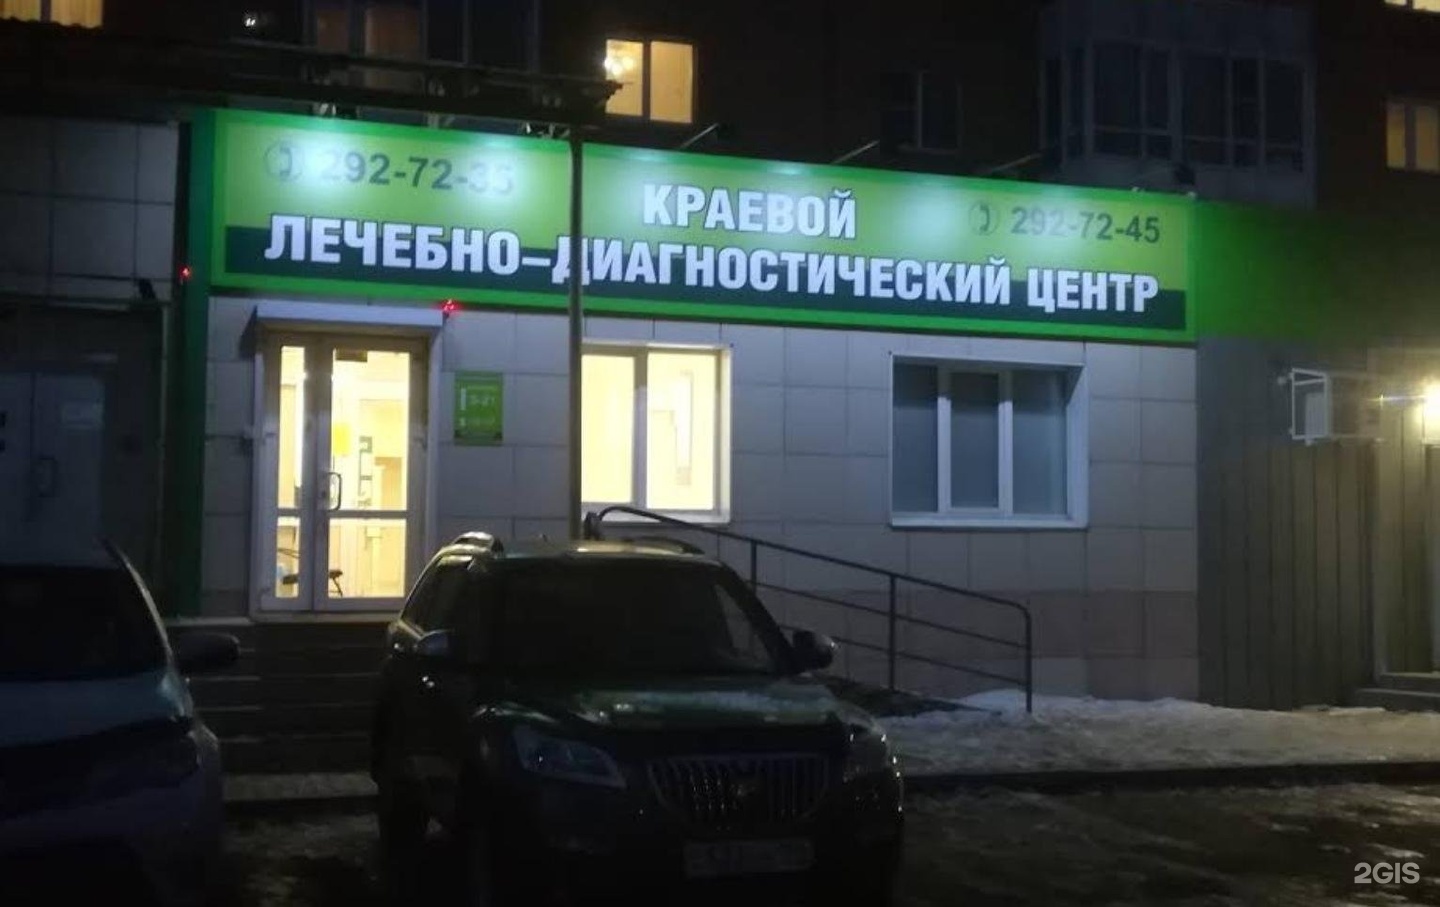 Красноярский центр здоровья